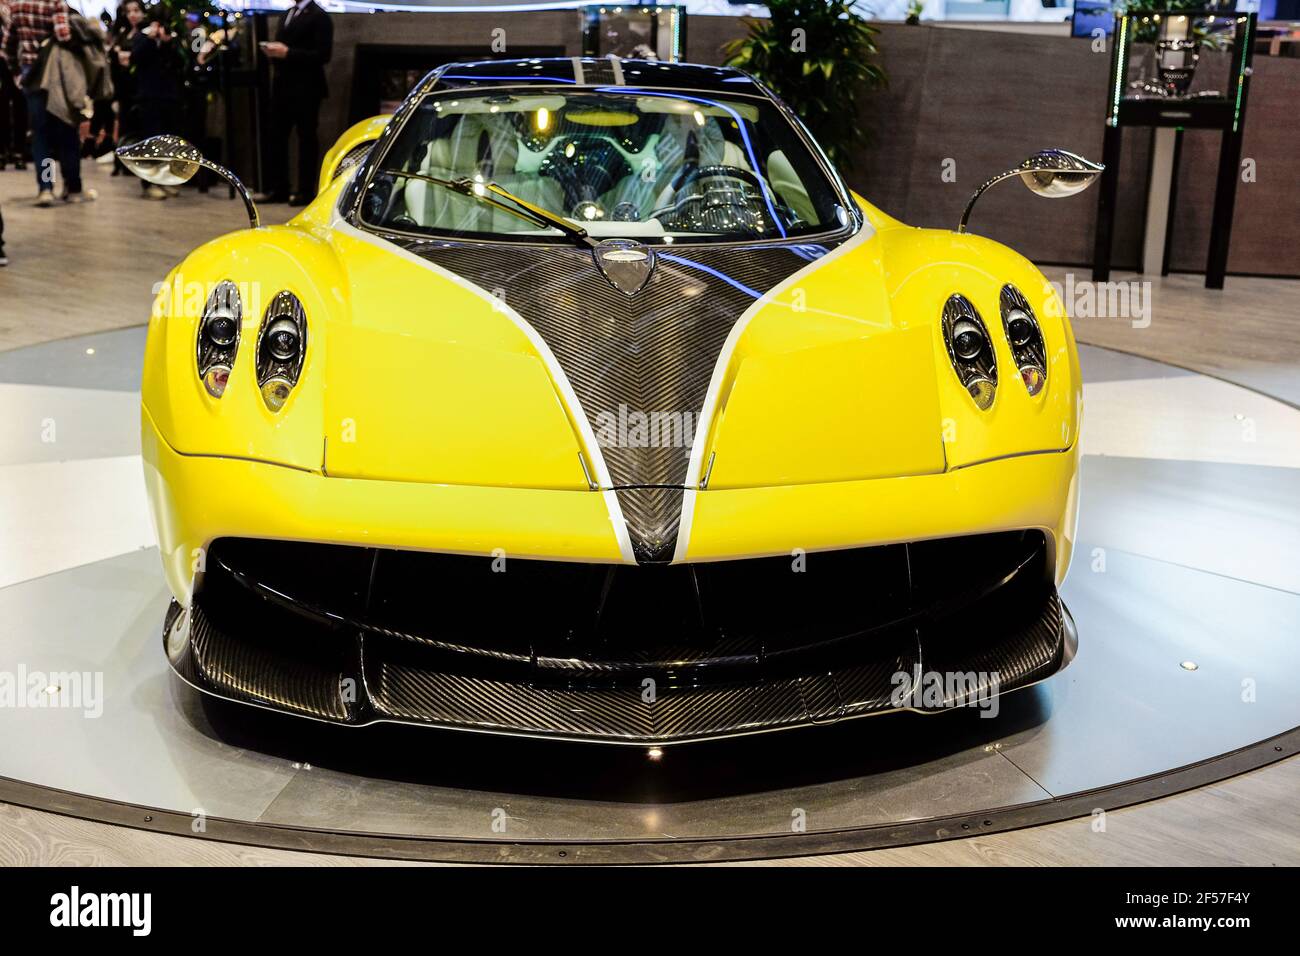 Edizione gialla limitata Pagani Huayra auto da corsa italiana internazionale mostra auto Foto Stock